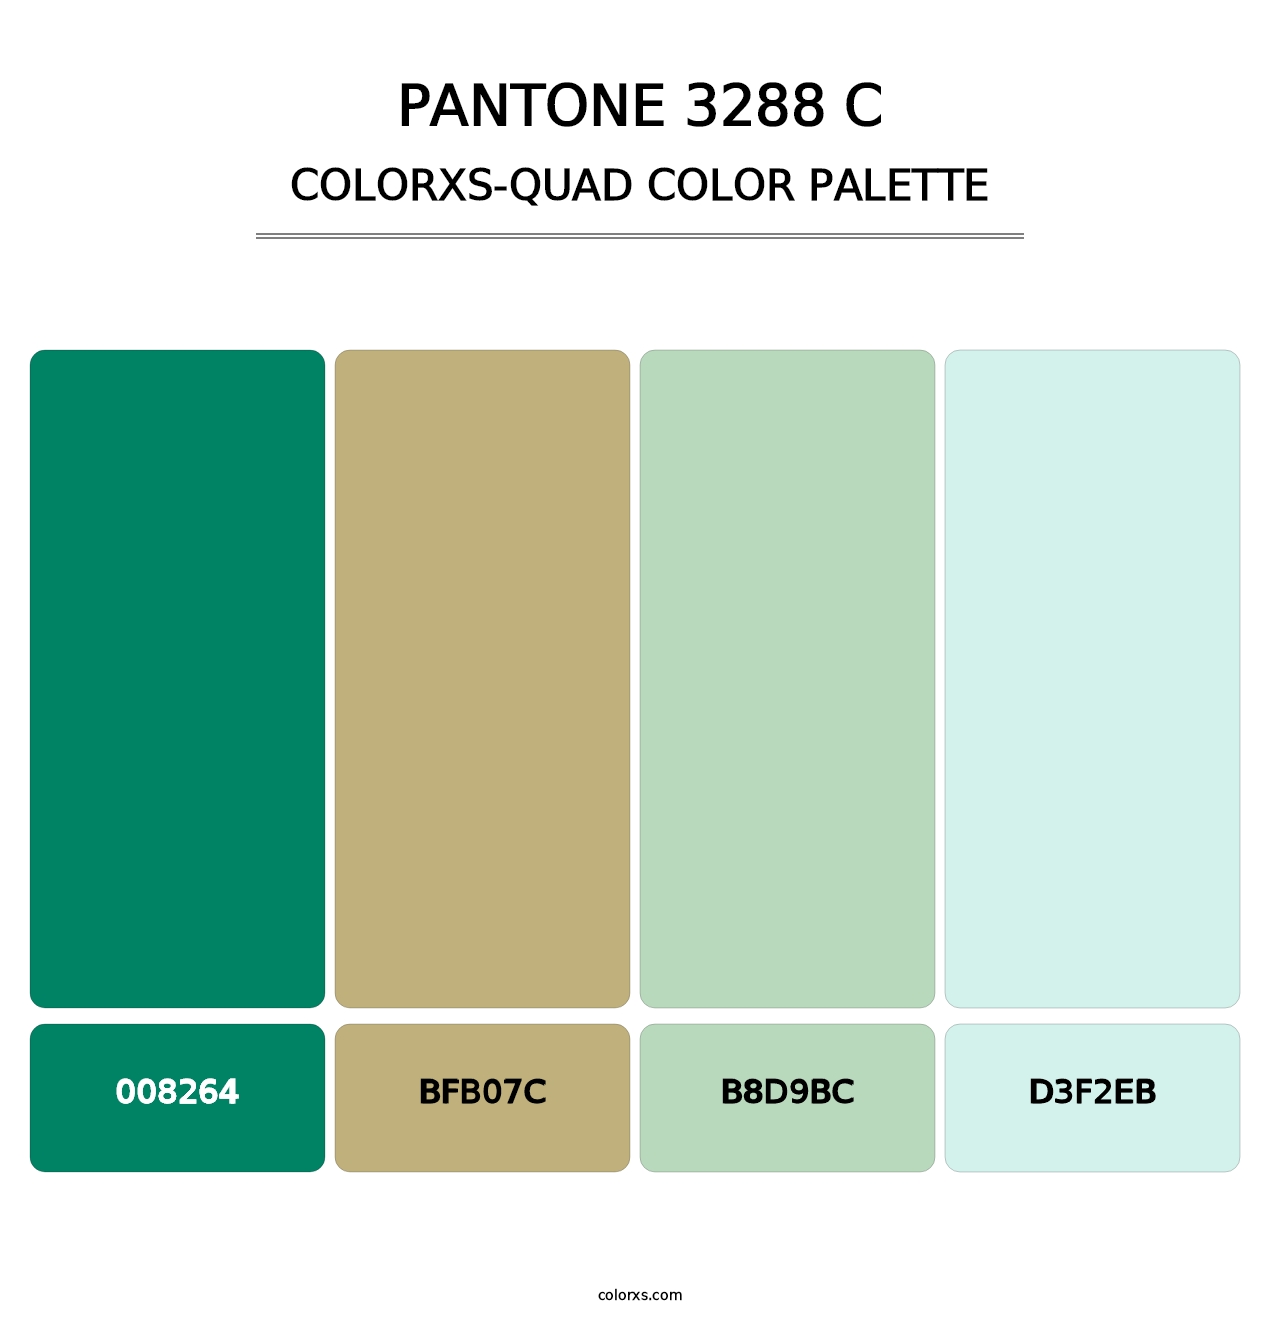 PANTONE 3288 C - Colorxs Quad Palette